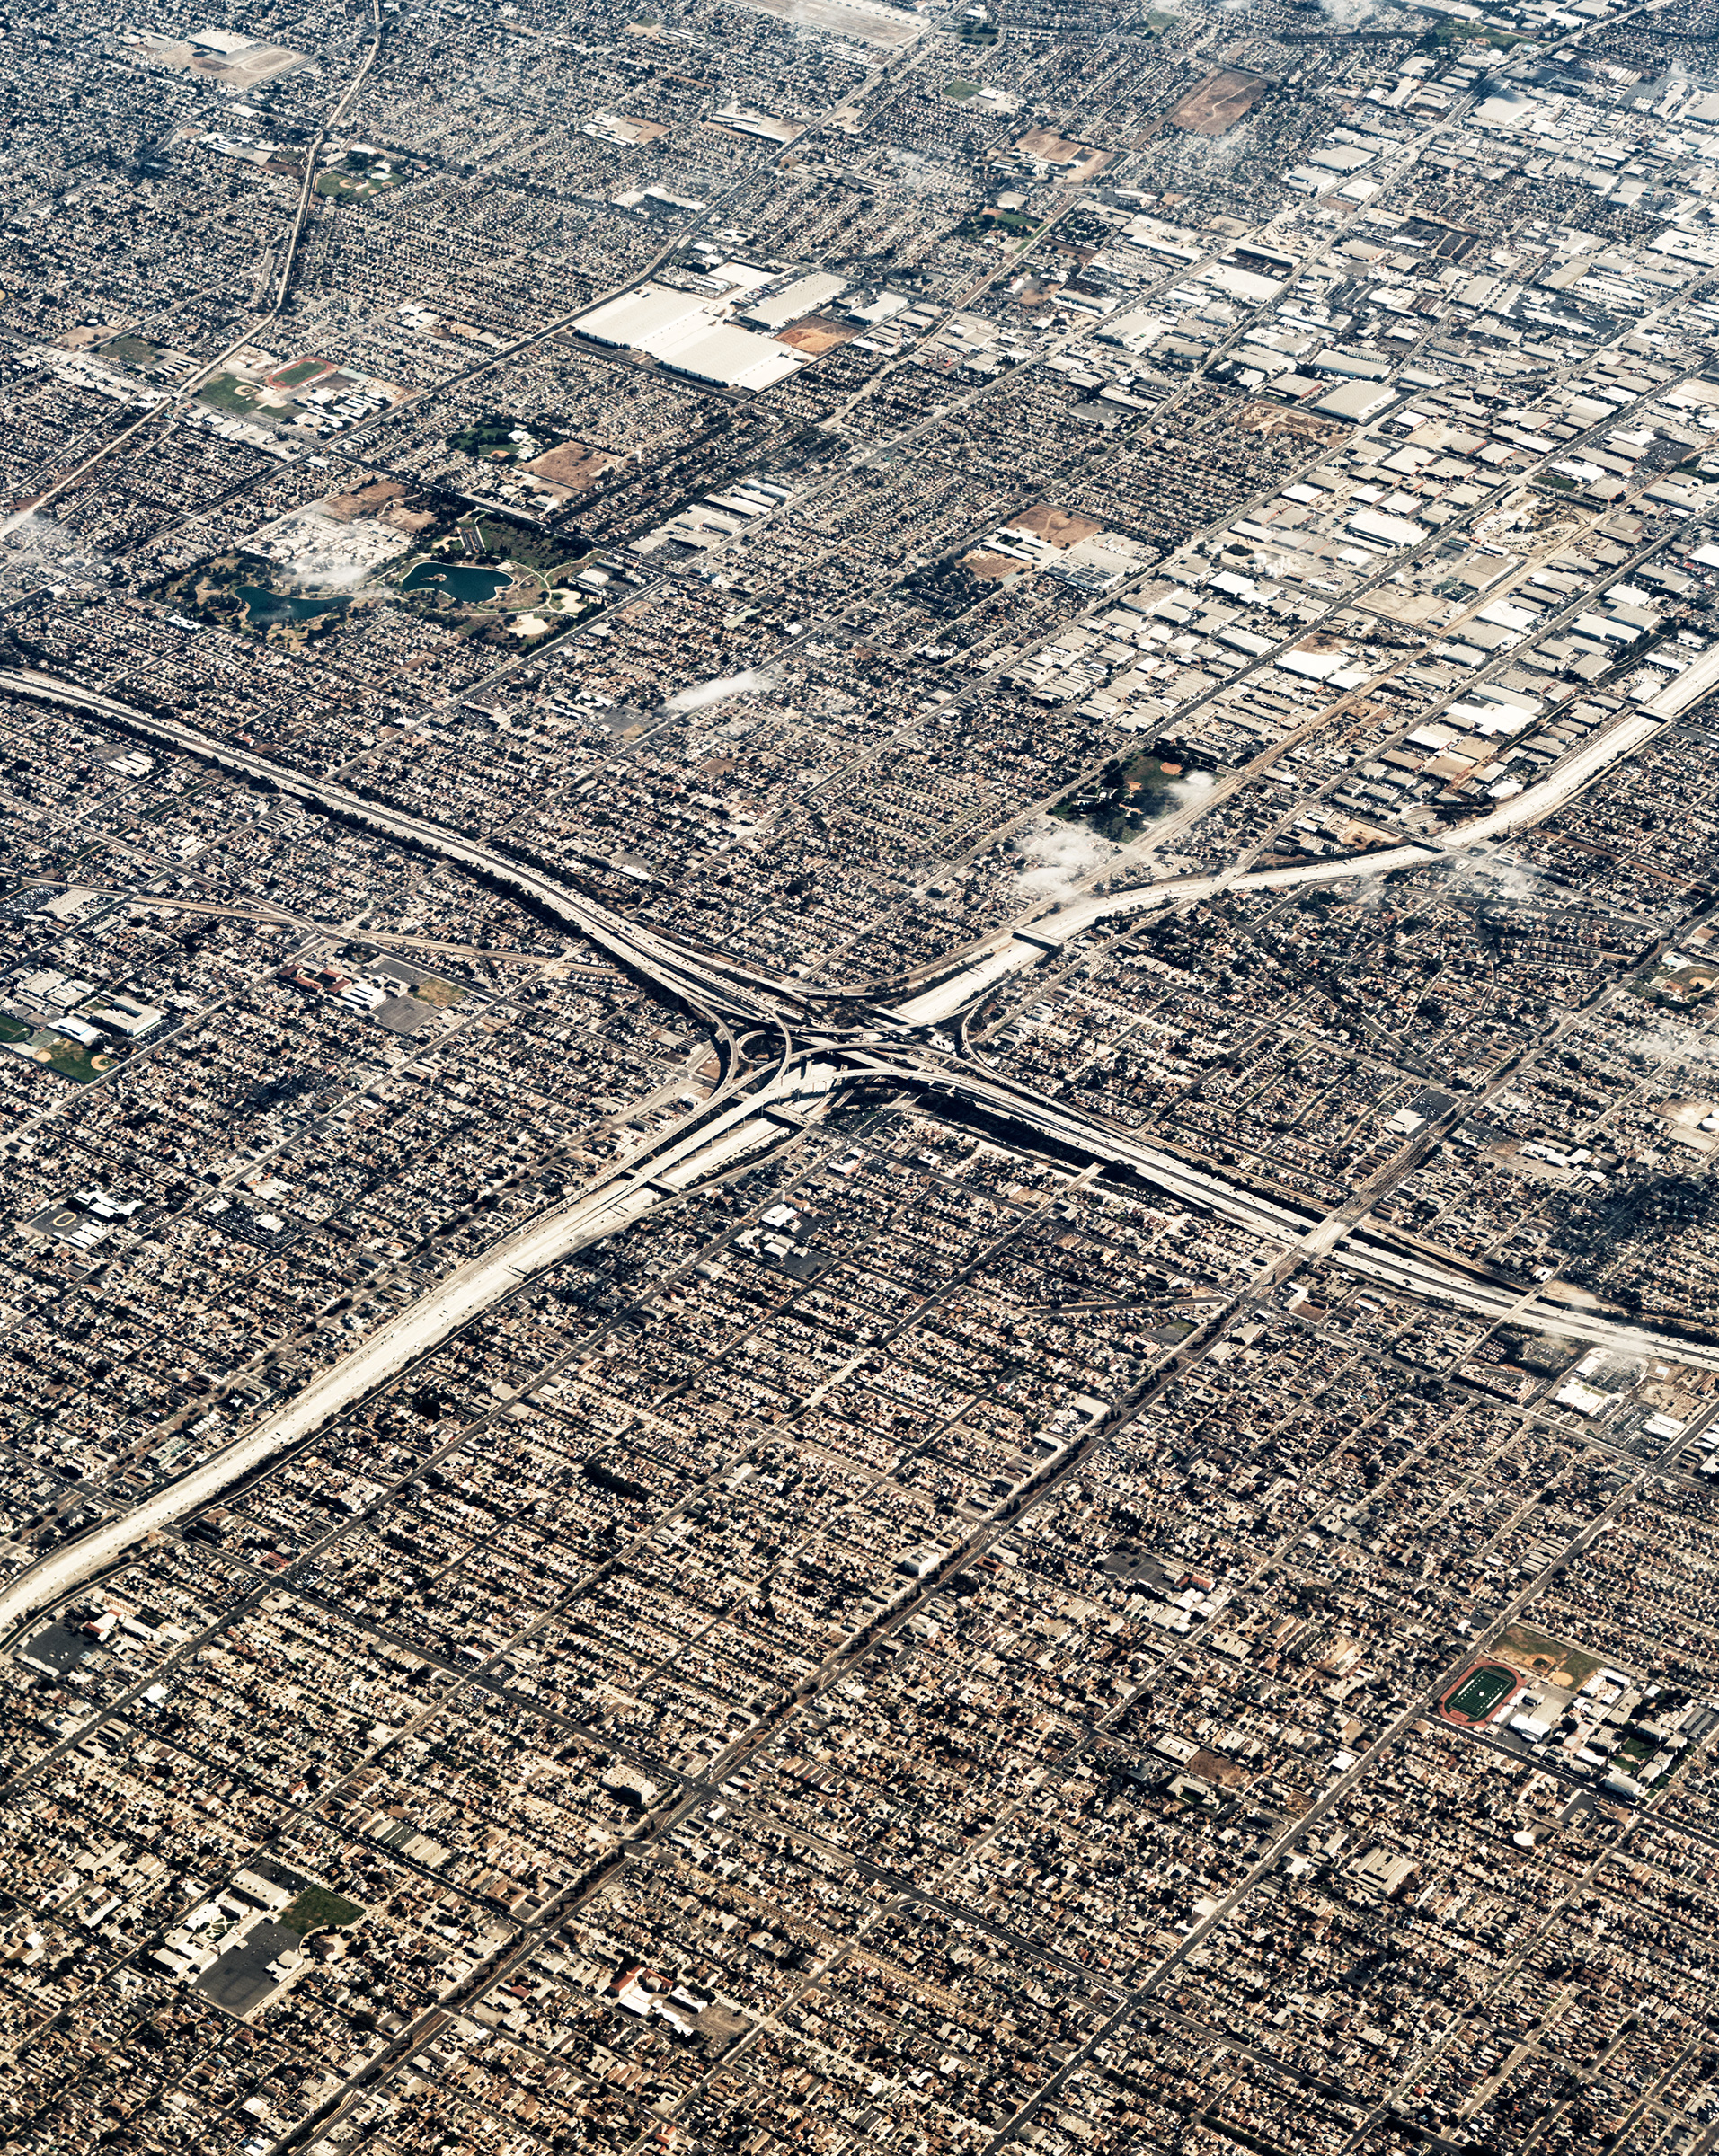 Urban sprawl in Los Angeles.